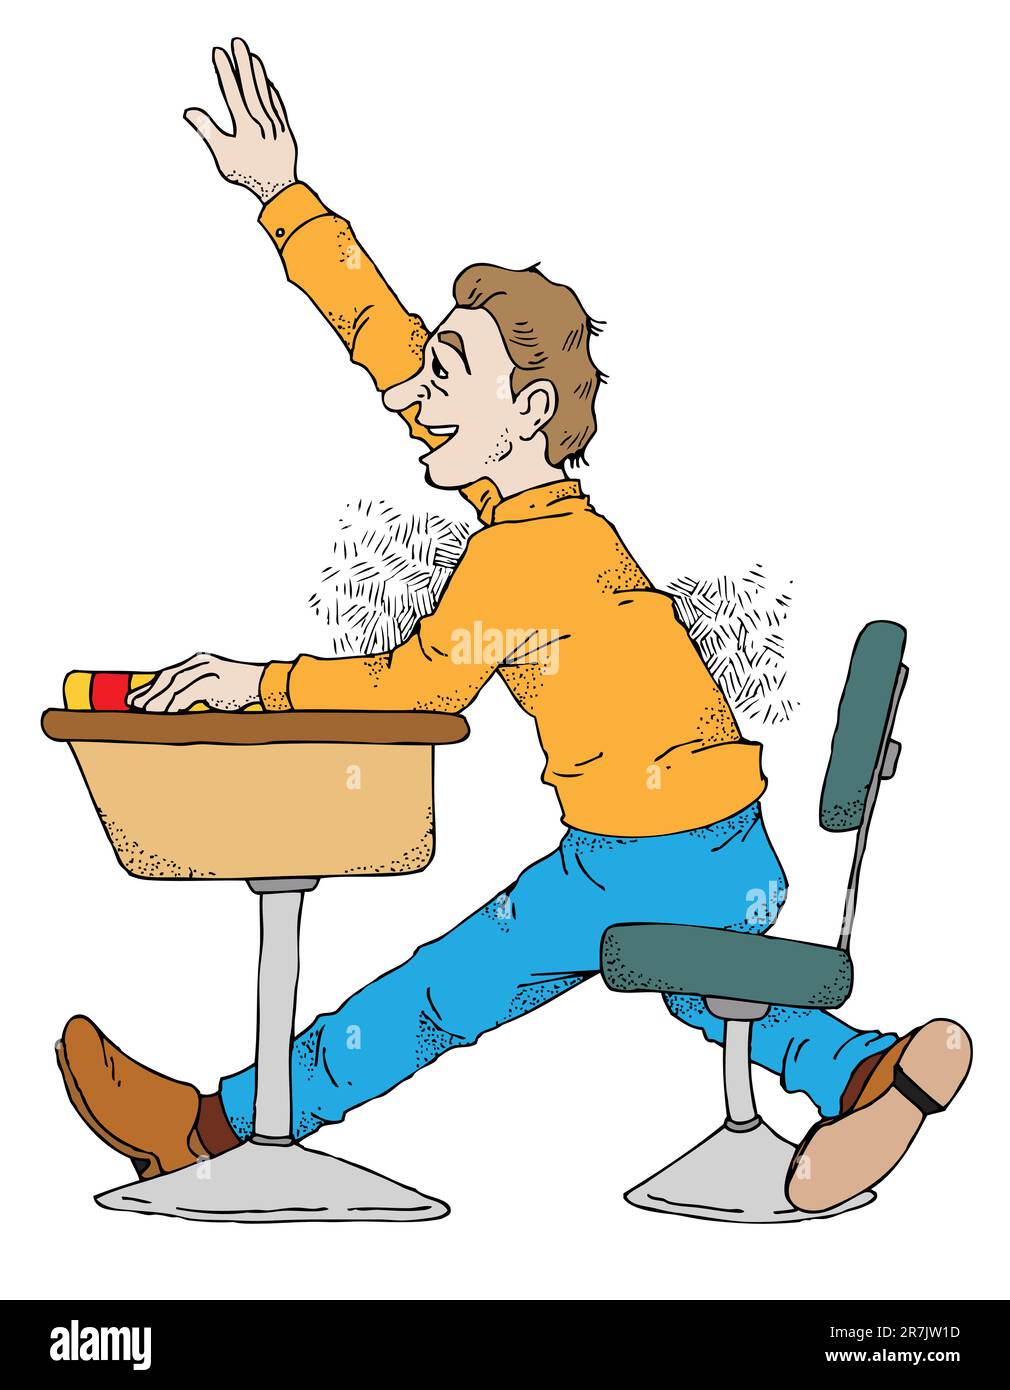 Illustration eines Schülers, der im Unterricht die Hand hebt. Stock Vektor